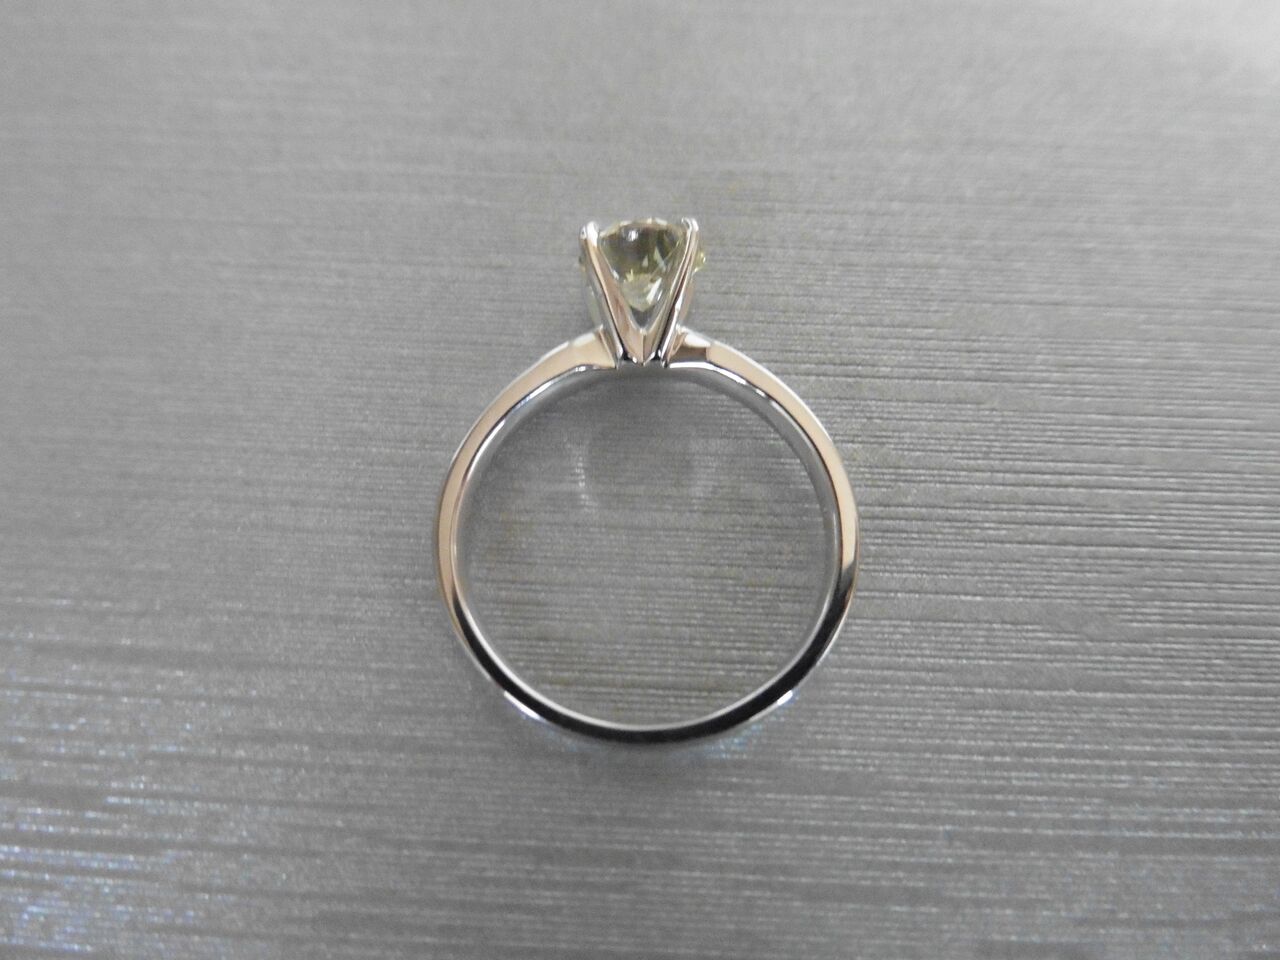 1.04Ct Diamond Solitaire Ring Set In Platinum 950. - Image 2 of 3